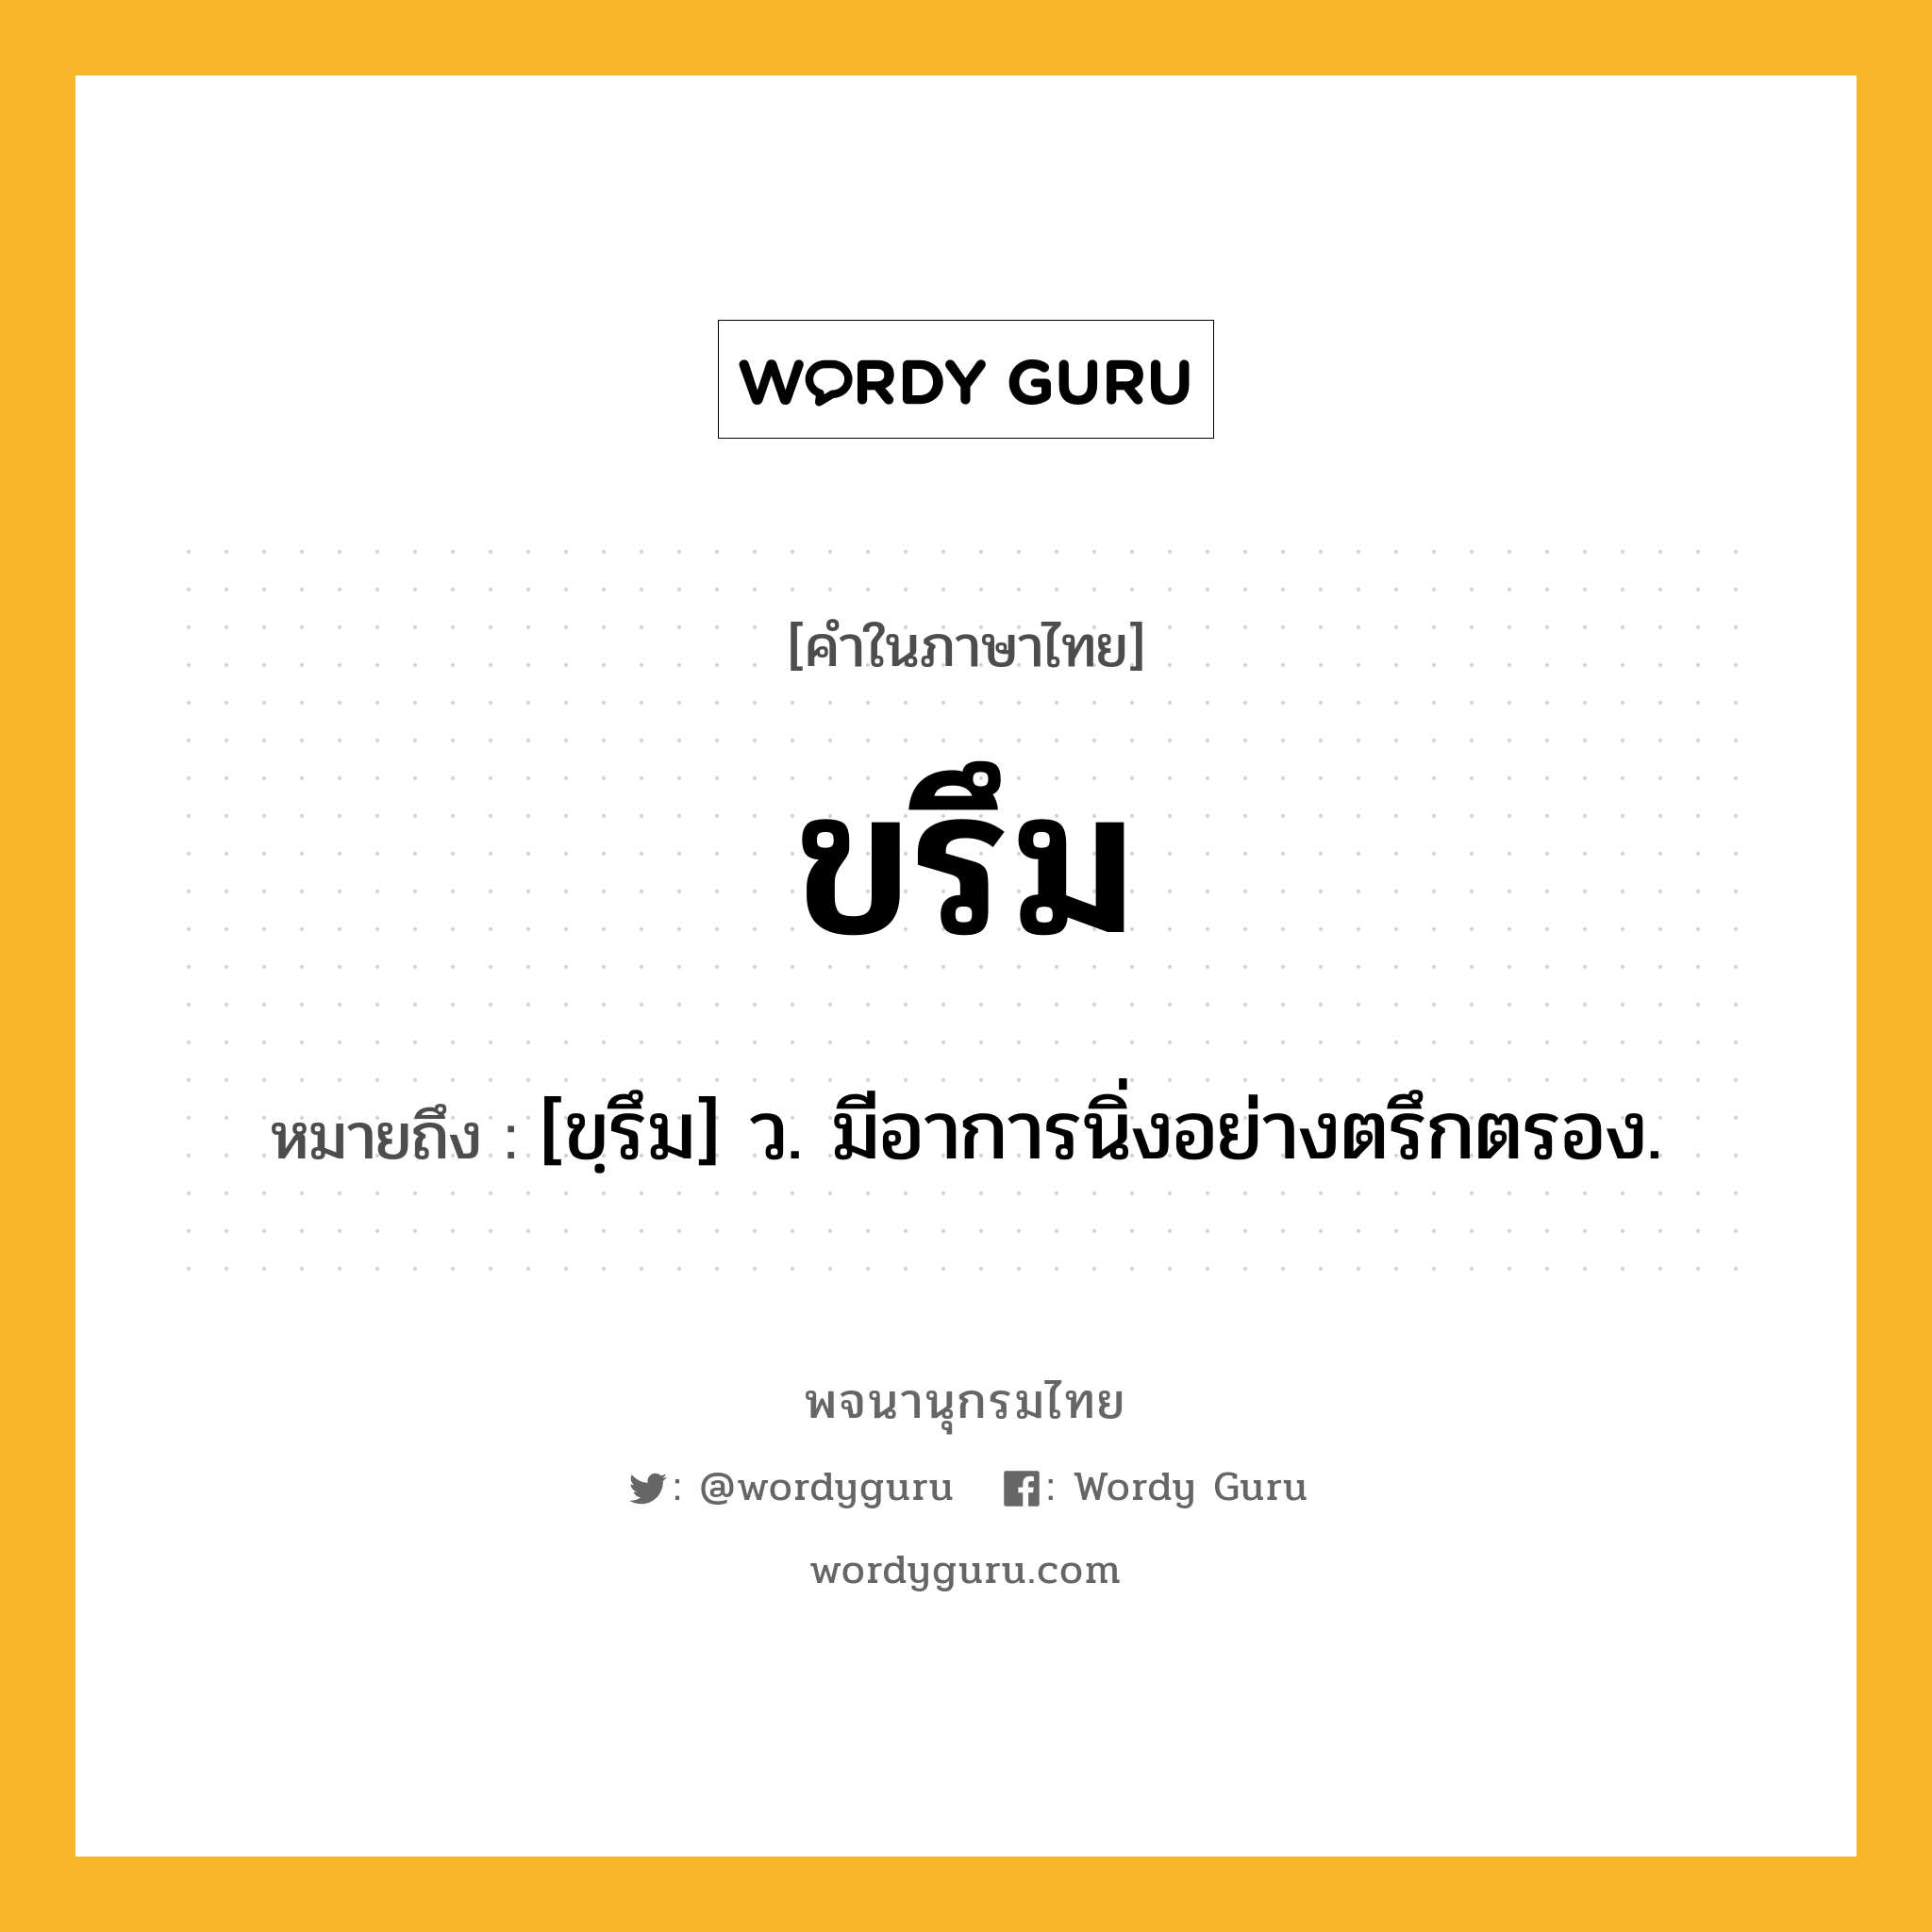 ขรึม ความหมาย หมายถึงอะไร?, คำในภาษาไทย ขรึม หมายถึง [ขฺรึม] ว. มีอาการนิ่งอย่างตรึกตรอง.